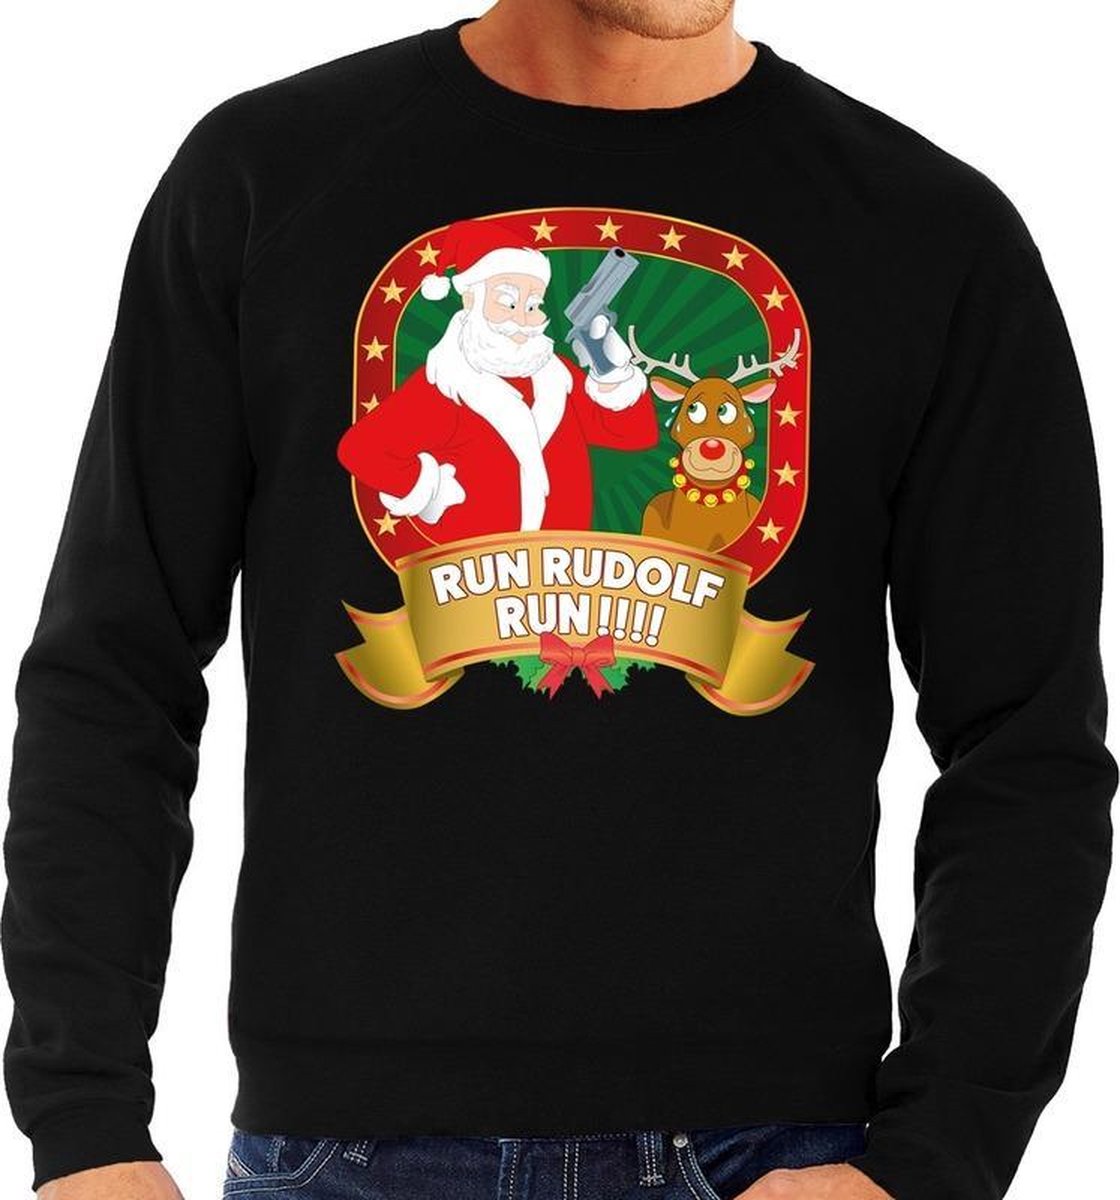 Afbeelding van product Bellatio Decorations  Foute kersttrui / sweater - zwart - Kerstman Run Rudolf Run heren XL (54)  - maat XL